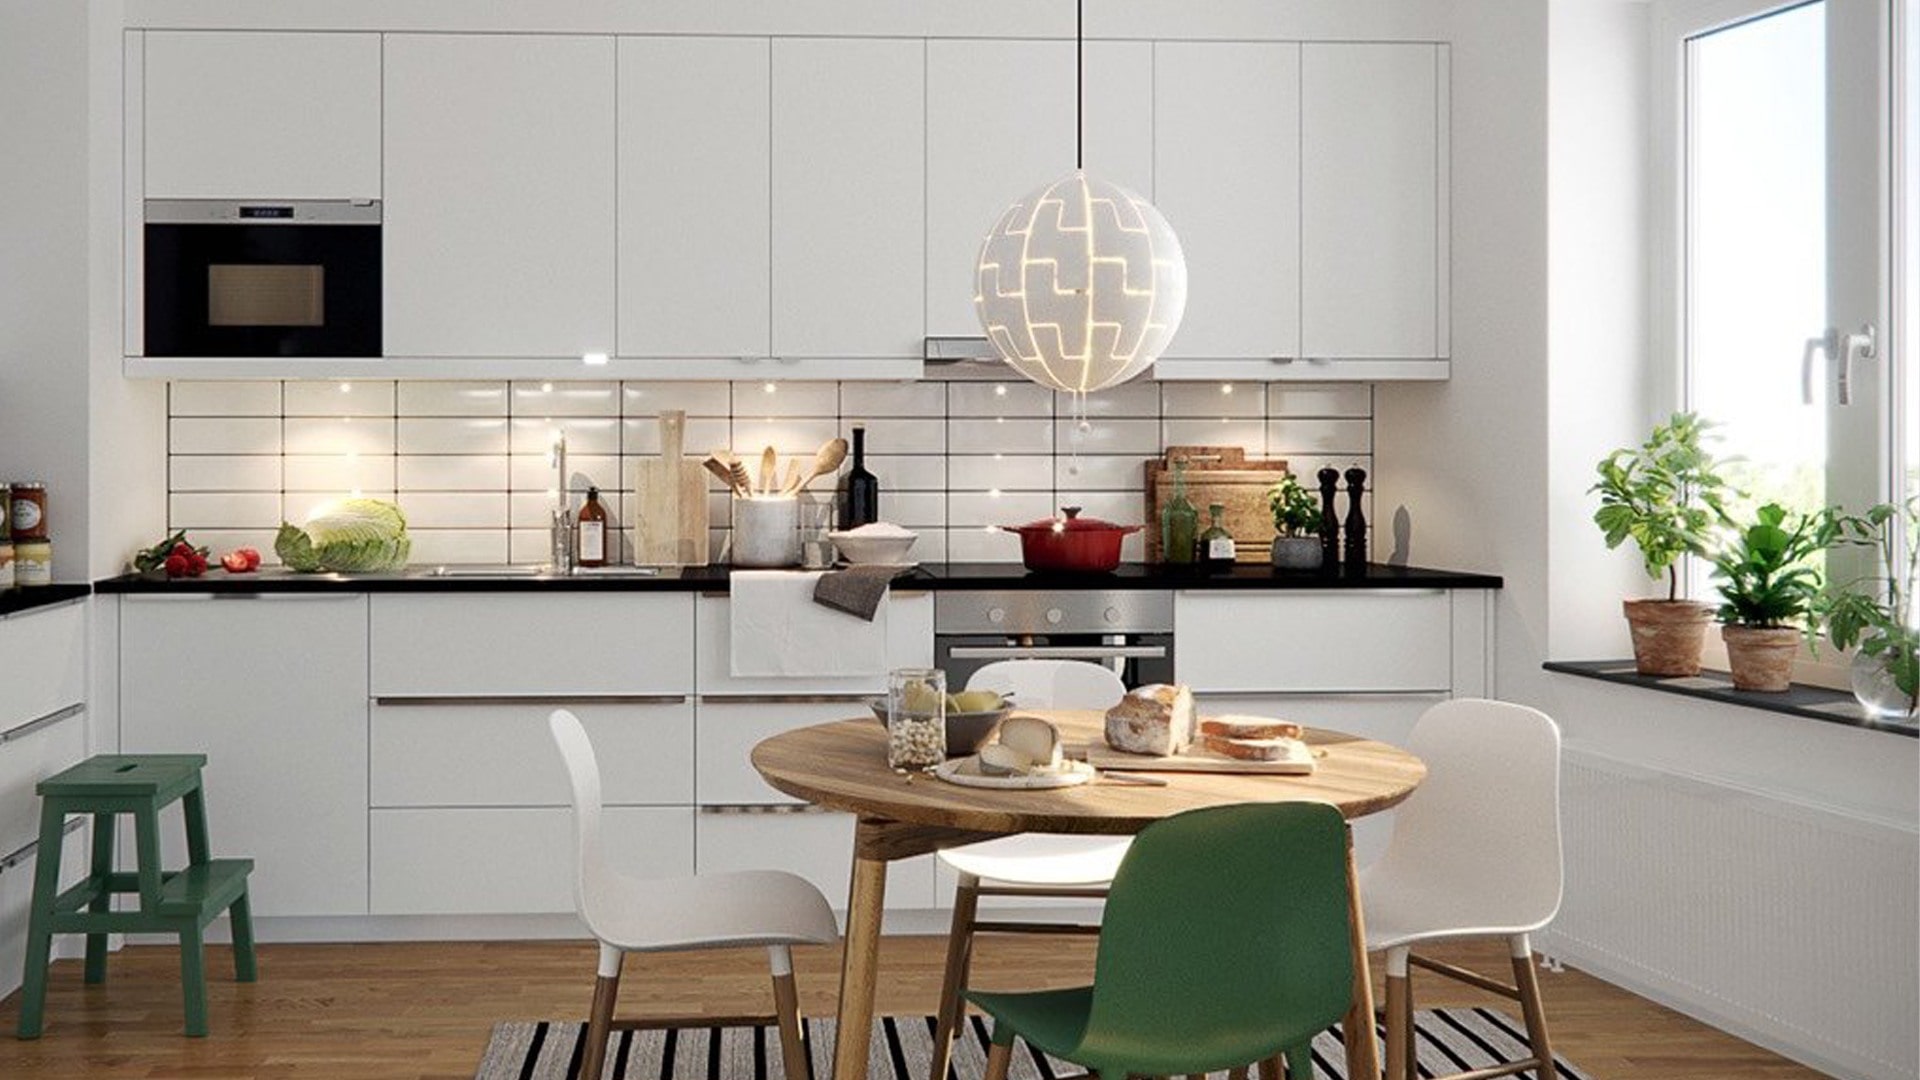 Mẫu tủ bếp có cửa sổ - kiểu thiết kế hiện đại, thông minh để giúp cho không gian bếp nhà bạn trở nên thông thoáng, đỡ ngột ngạt và hạn chế bám mùi thức ăn.  1